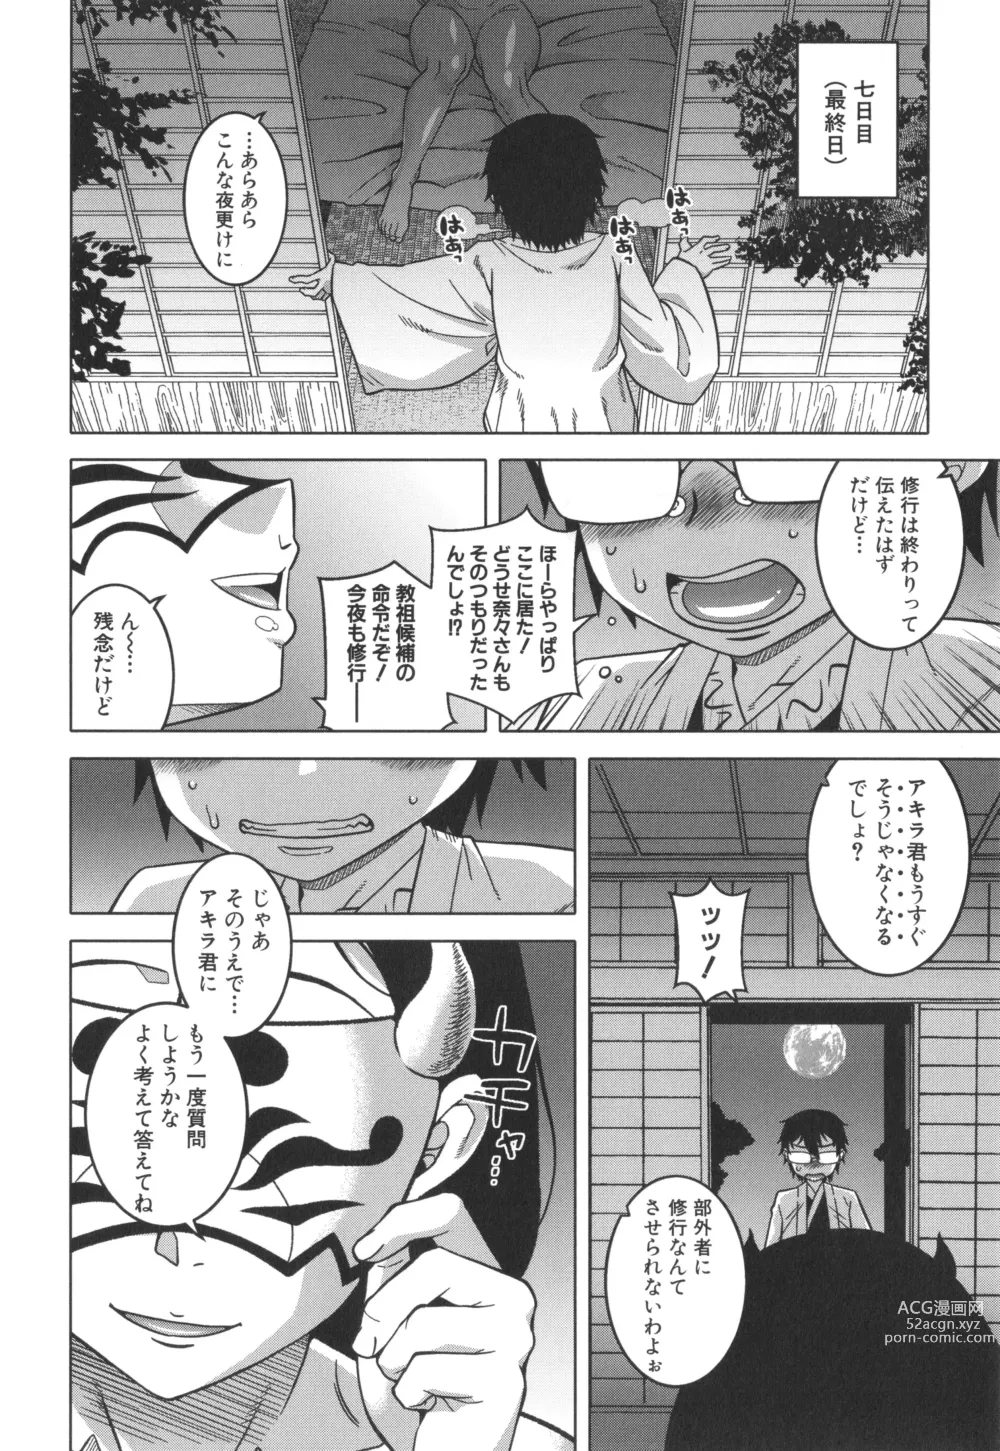 Page 31 of manga Kami-sama no Tsukurikata